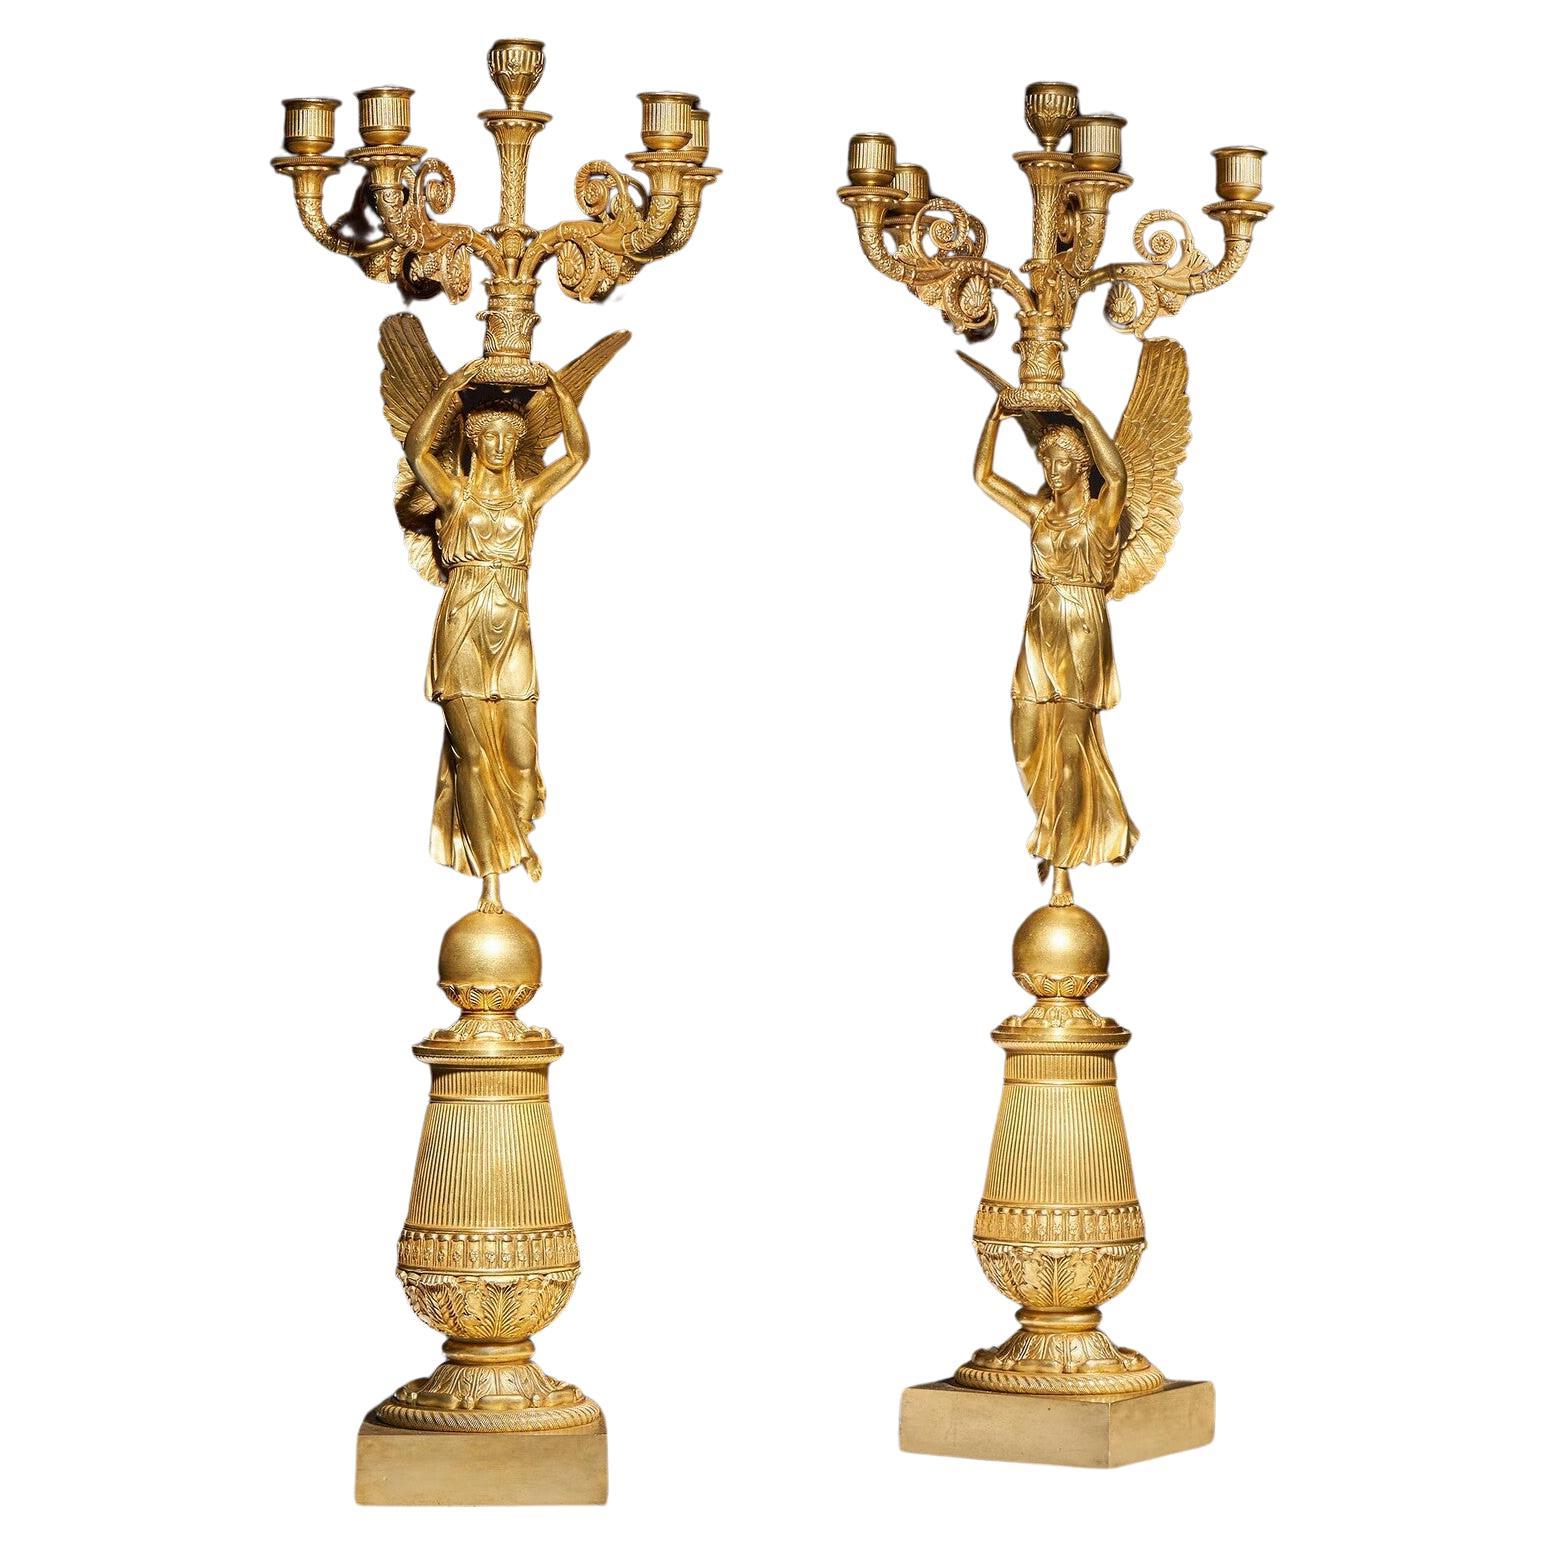 Exceptionnelle paire de candélabres en bronze doré de la fin de l'Empire français attribuée à Pier